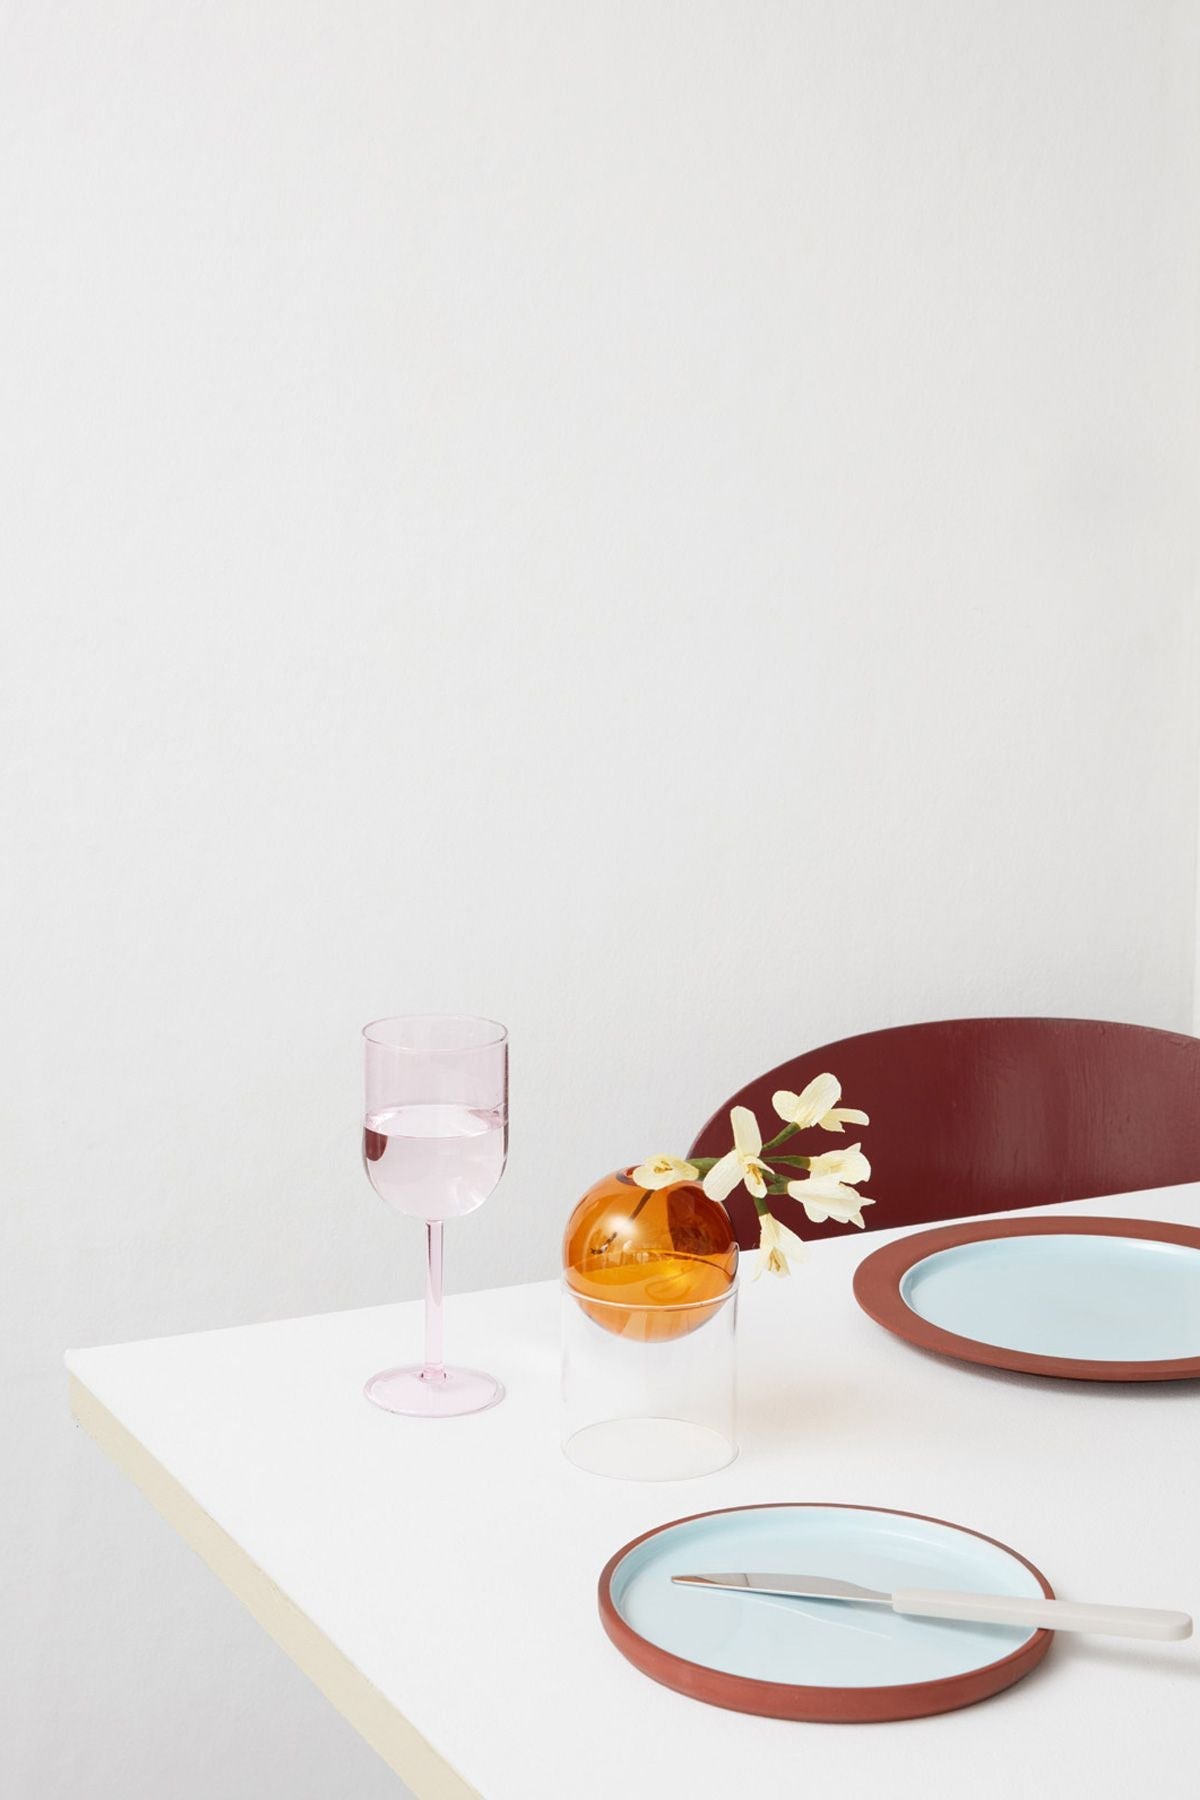 Studio About glasvarer sæt med 2 vinglas, rose